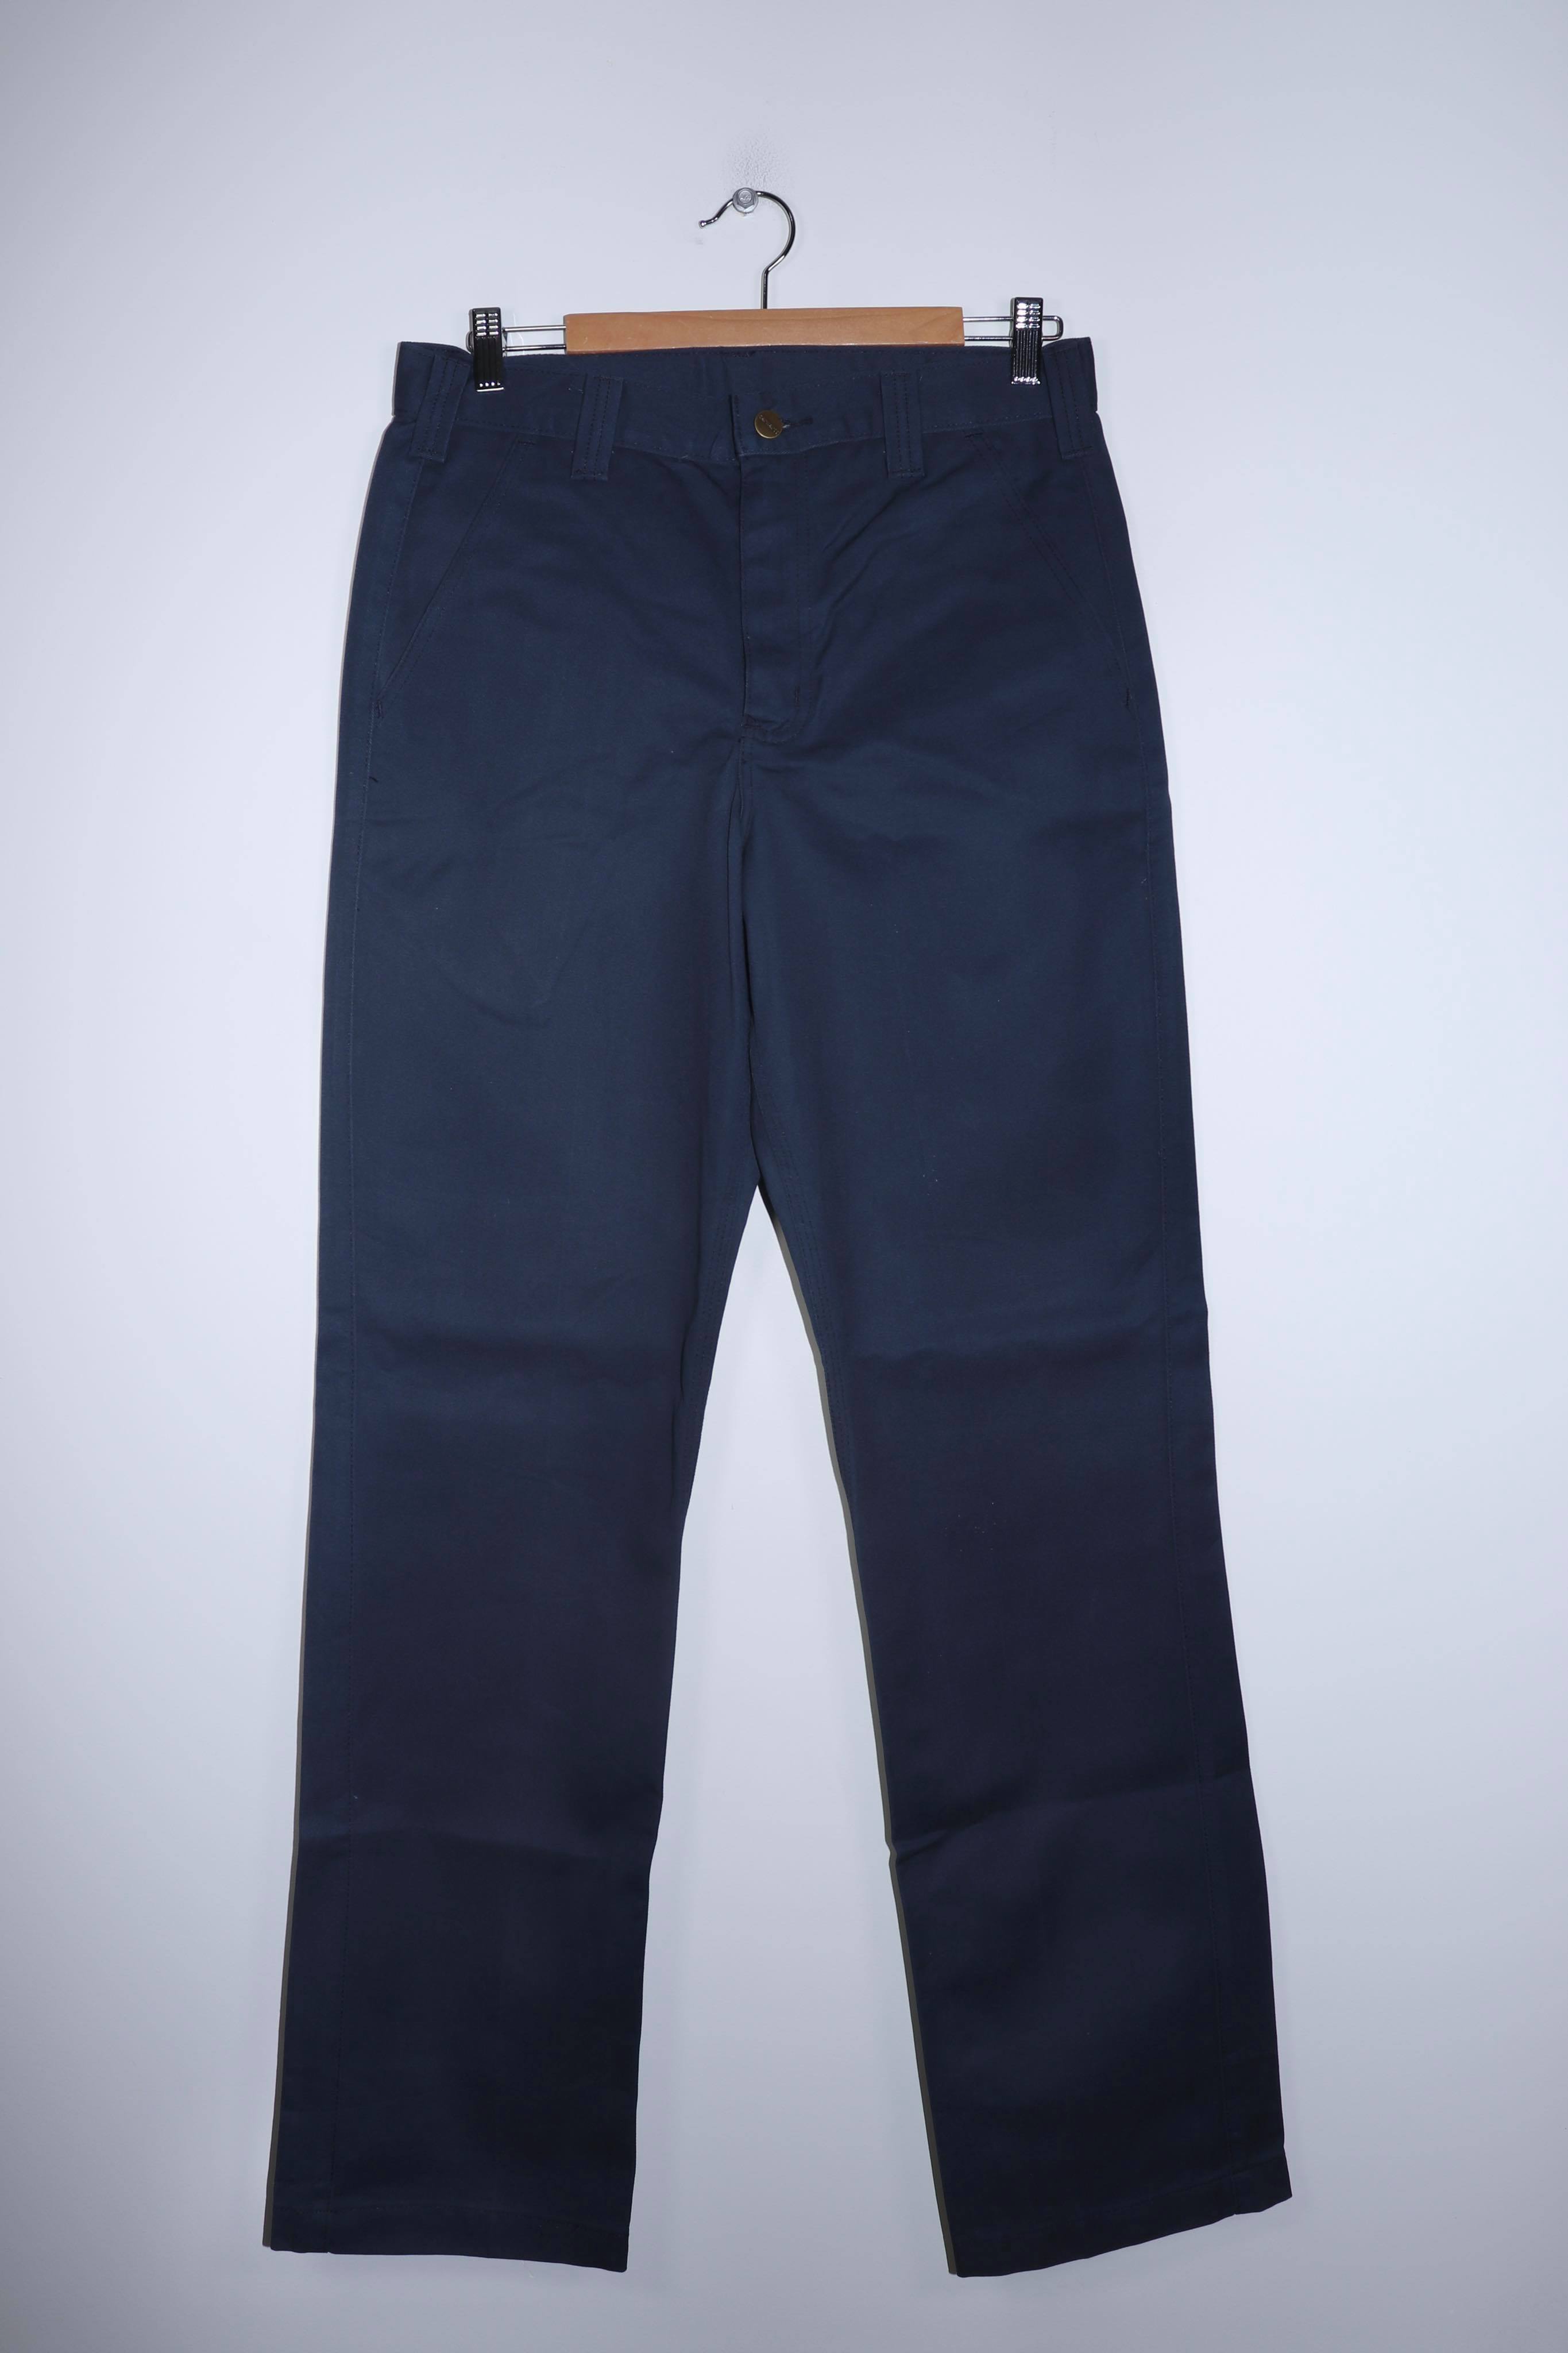 Vintage Carhartt Navy Worker Pants